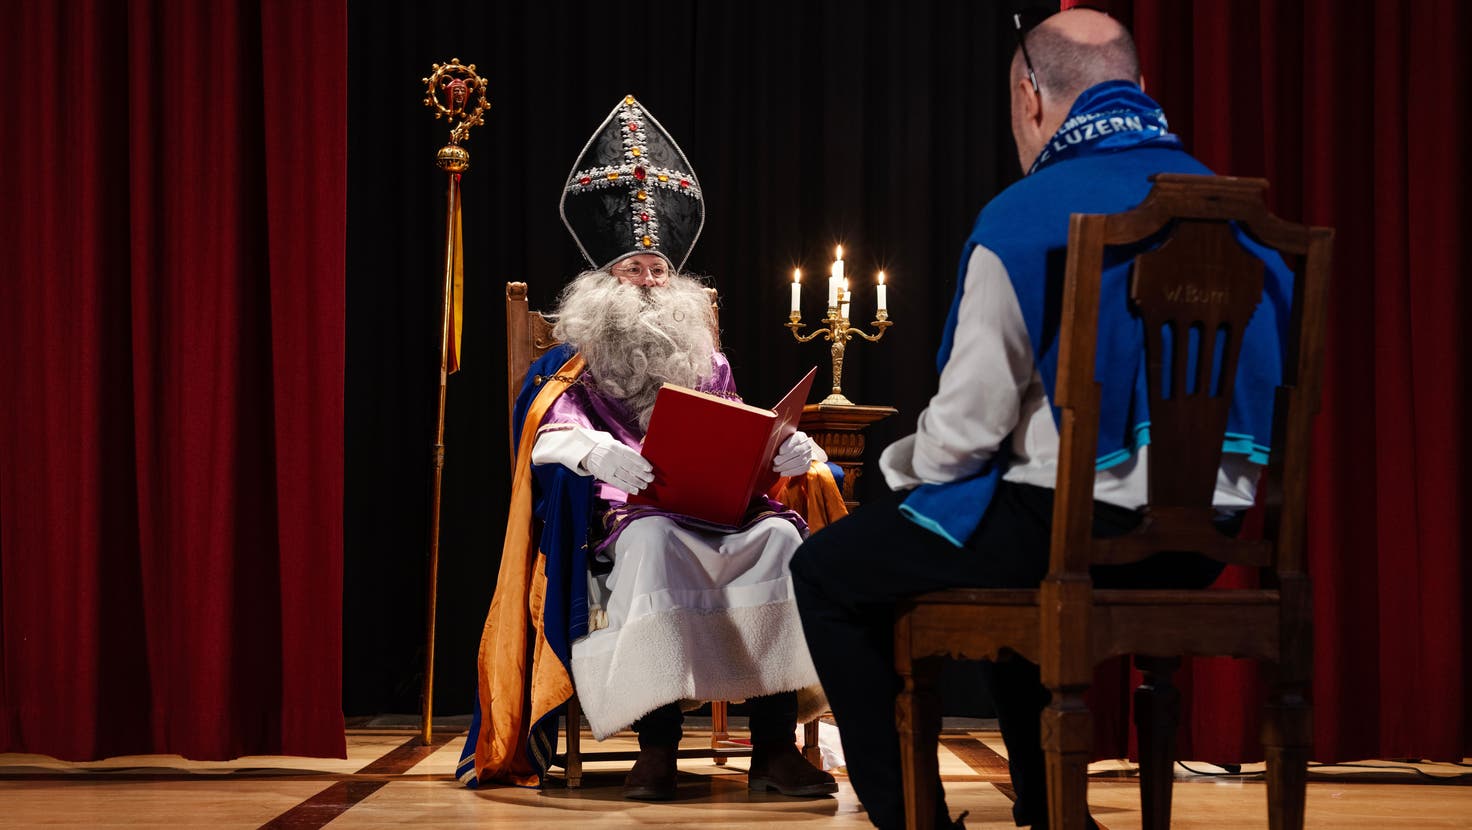 Sankt Nikolaus Inszenierung mit Jerome Martinu im Saal der Maskenliebhaber Gesellschaft in Luzern (Dominik Wunderli (luzern, 01.12.2022))